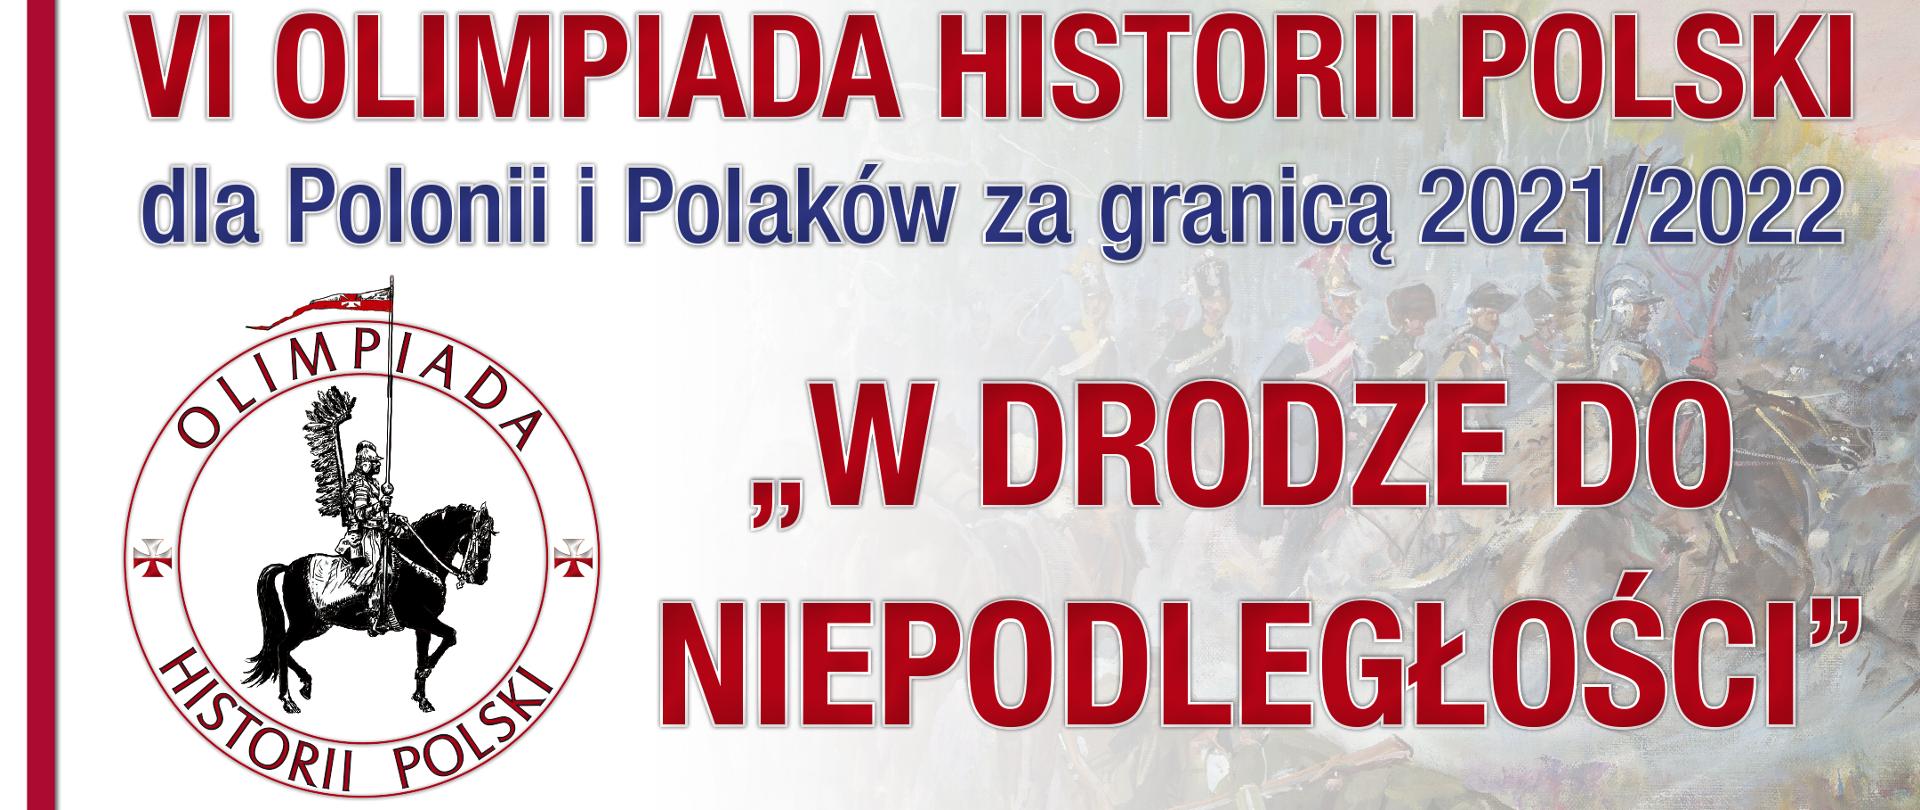 VI edycja Olimpiady Historii Polski dla Polonii i Polaków za granicą 2021/2022 